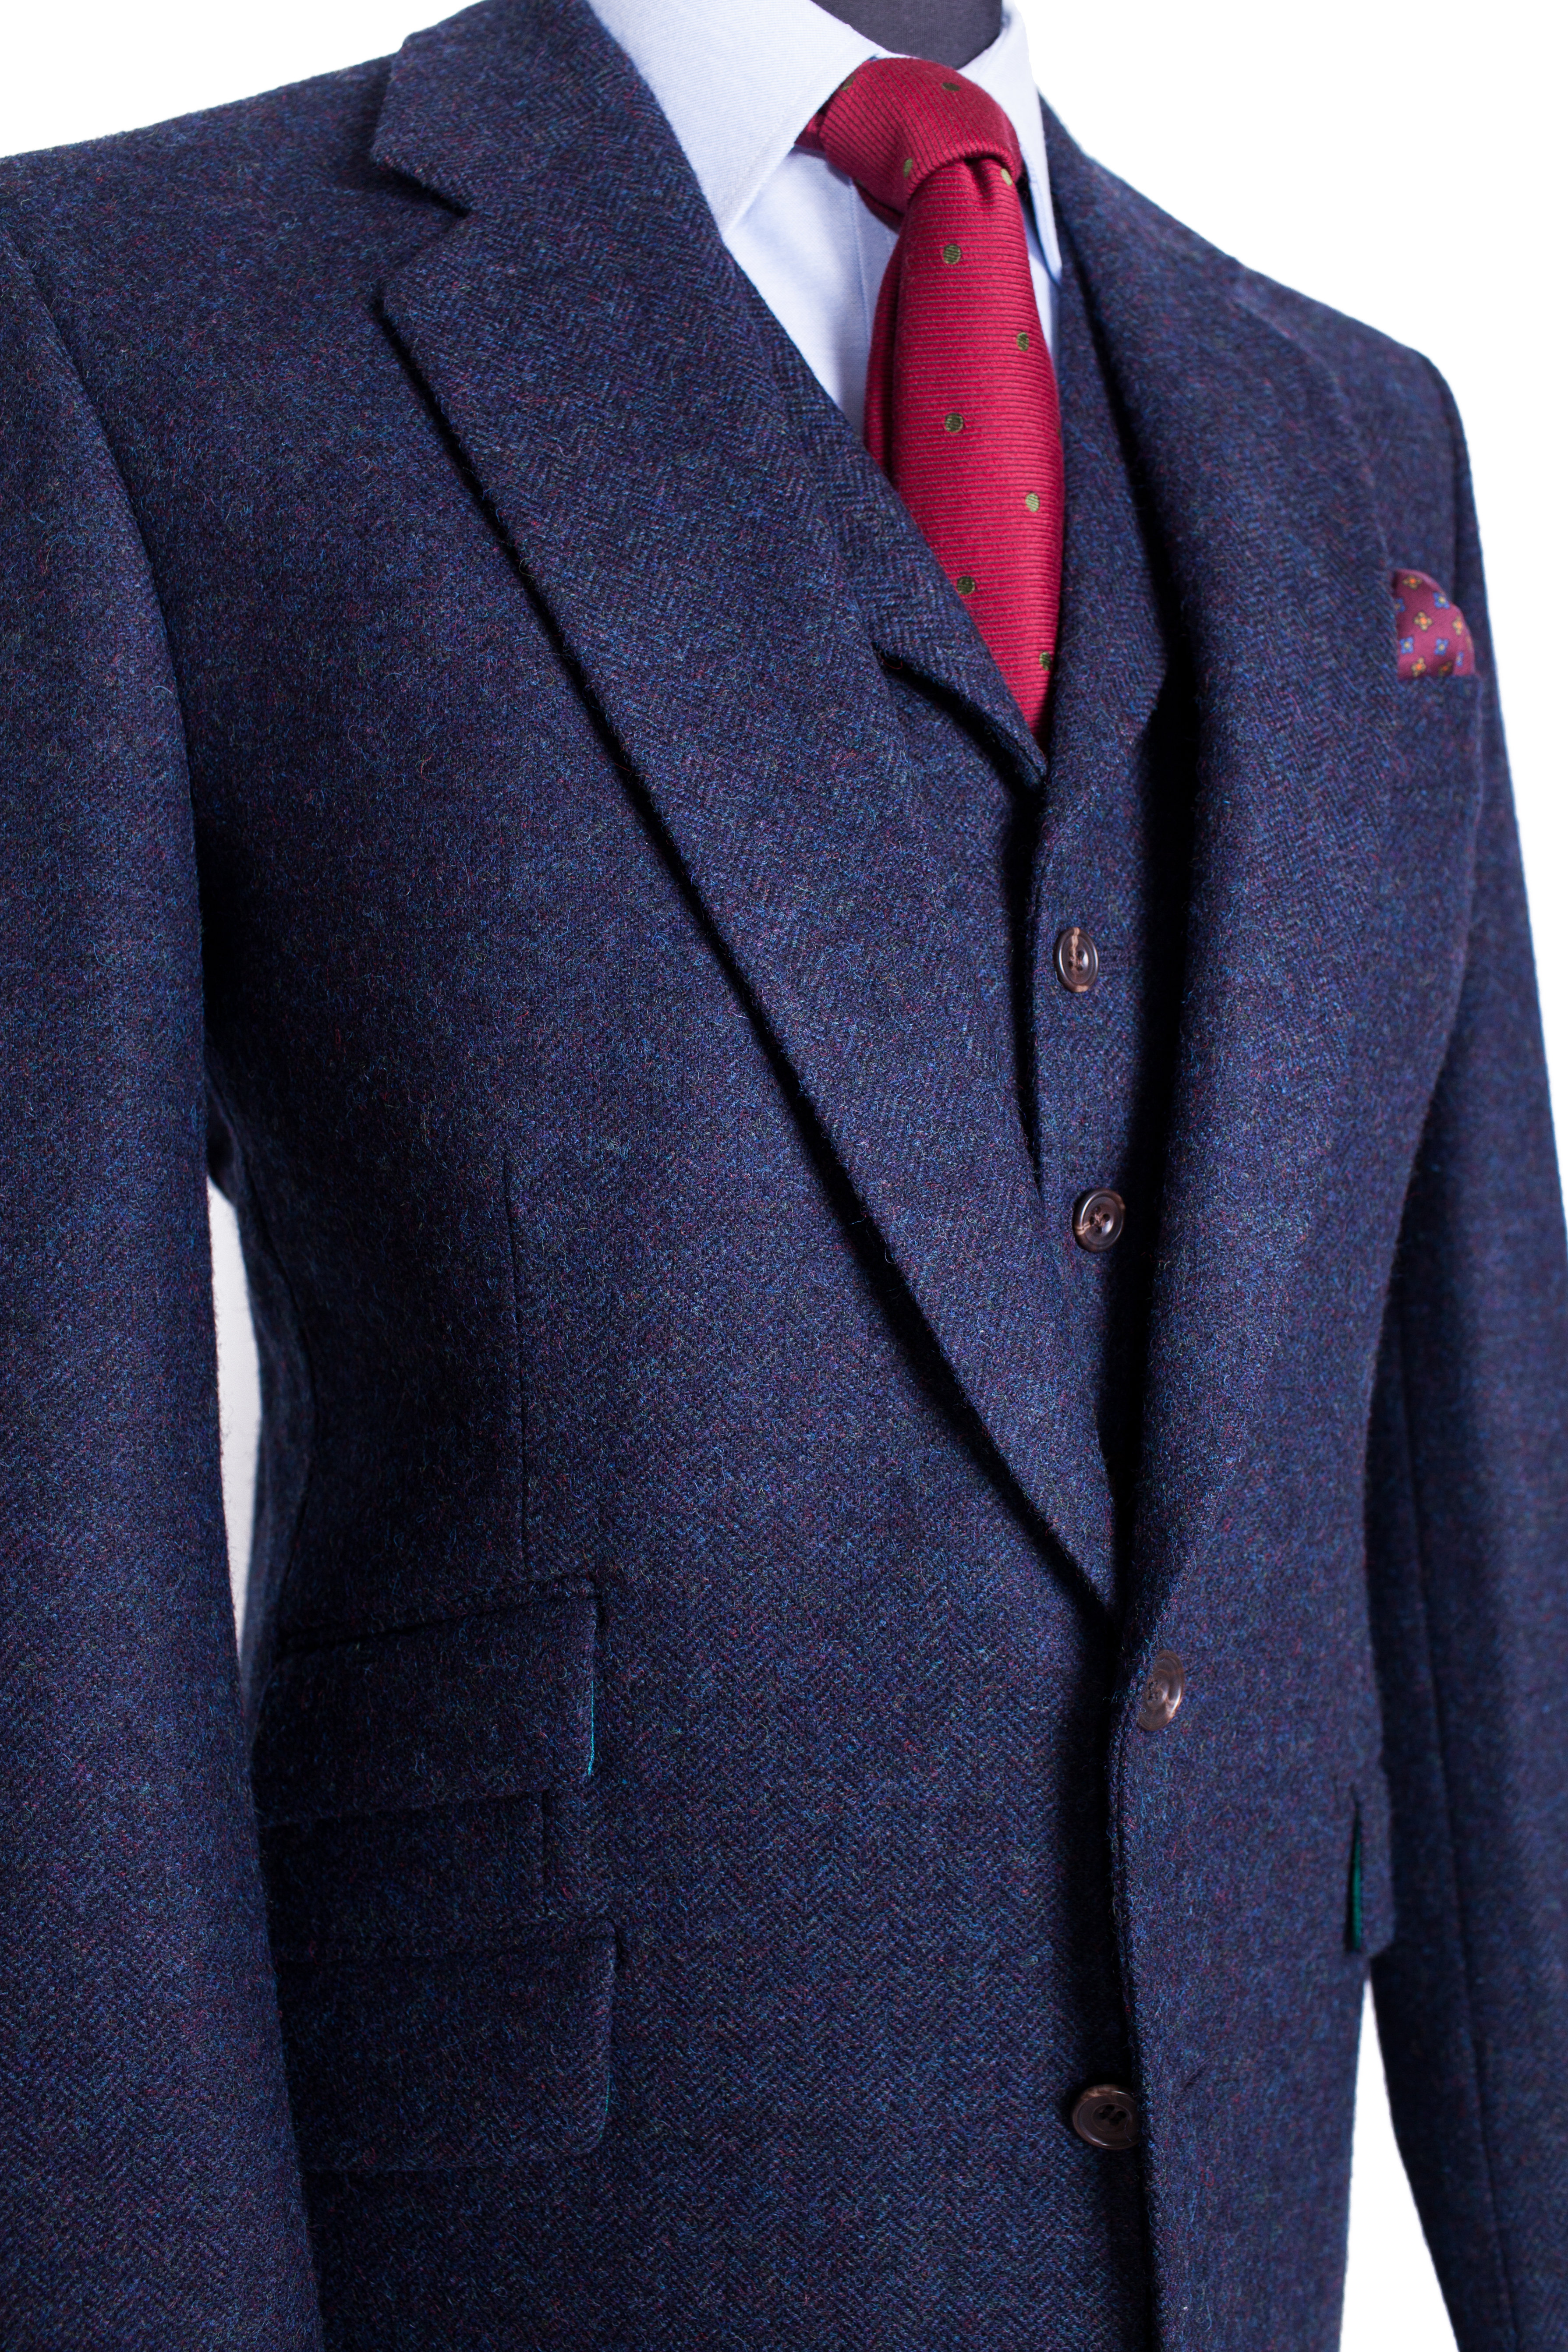 Stewart Christie Co. Edinburgh Three Piece Tweed Suit